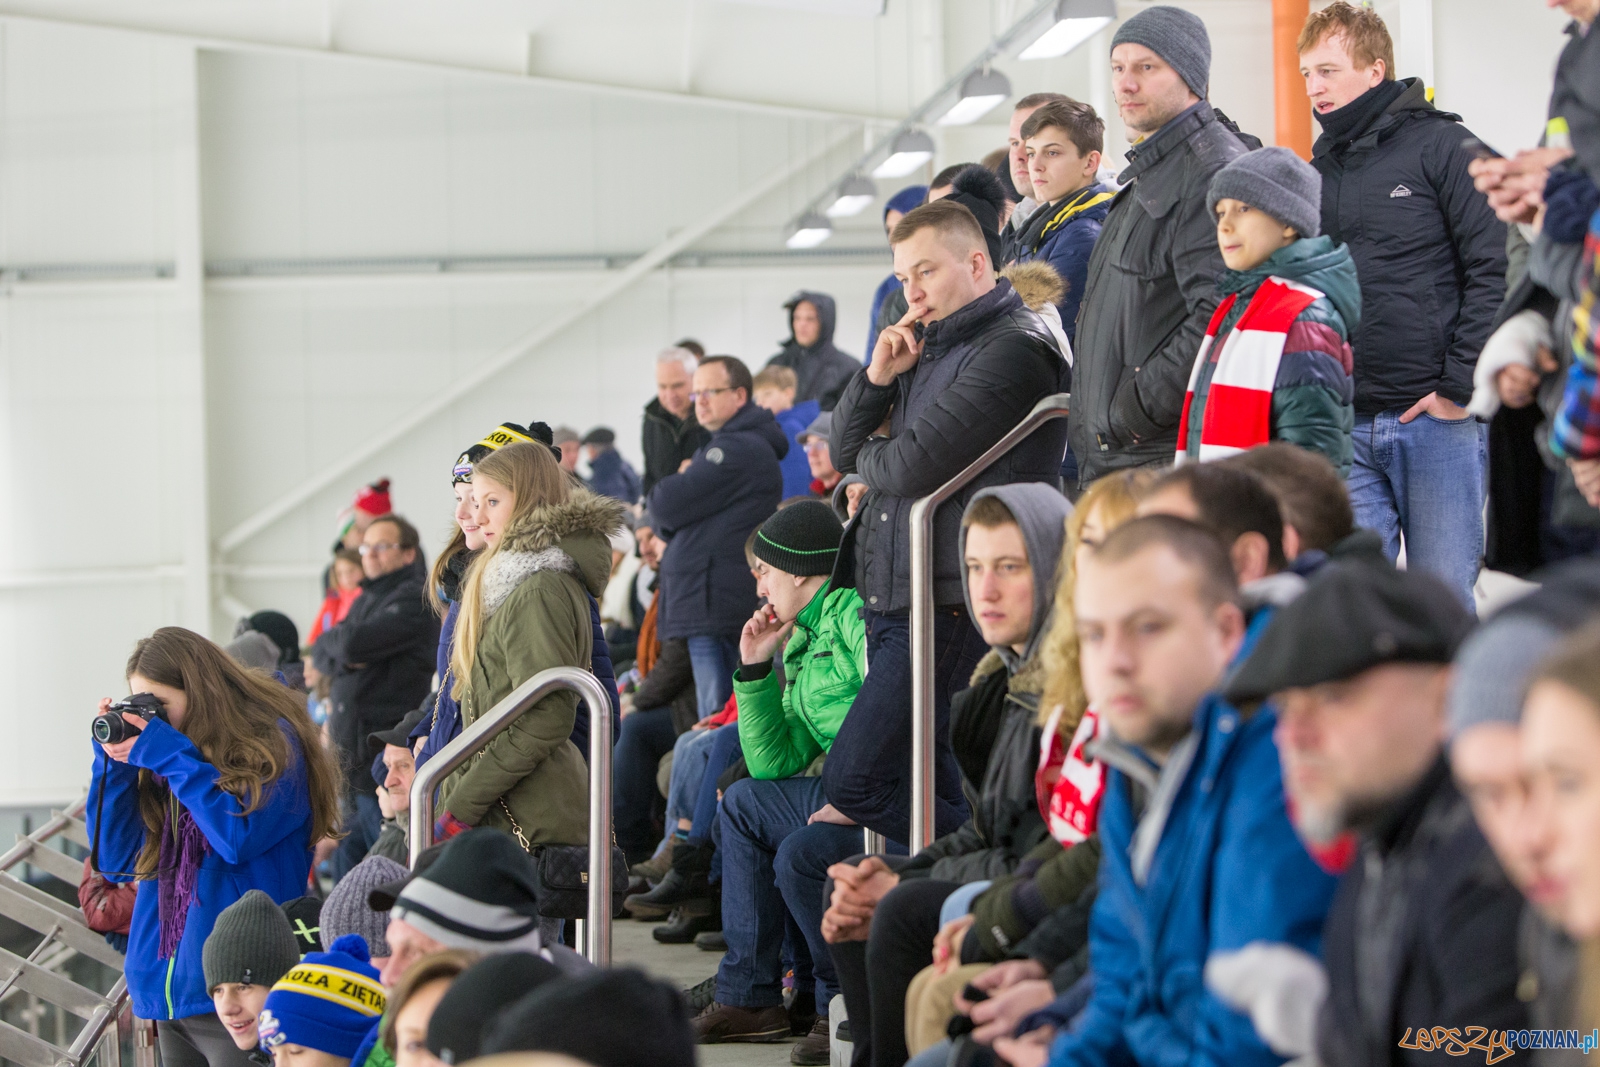 Międzynarodowy turniej hokeja na lodzie U18 (Polska - Ukraina)  Foto: lepszyPOZNAN.pl / Piotr Rychter